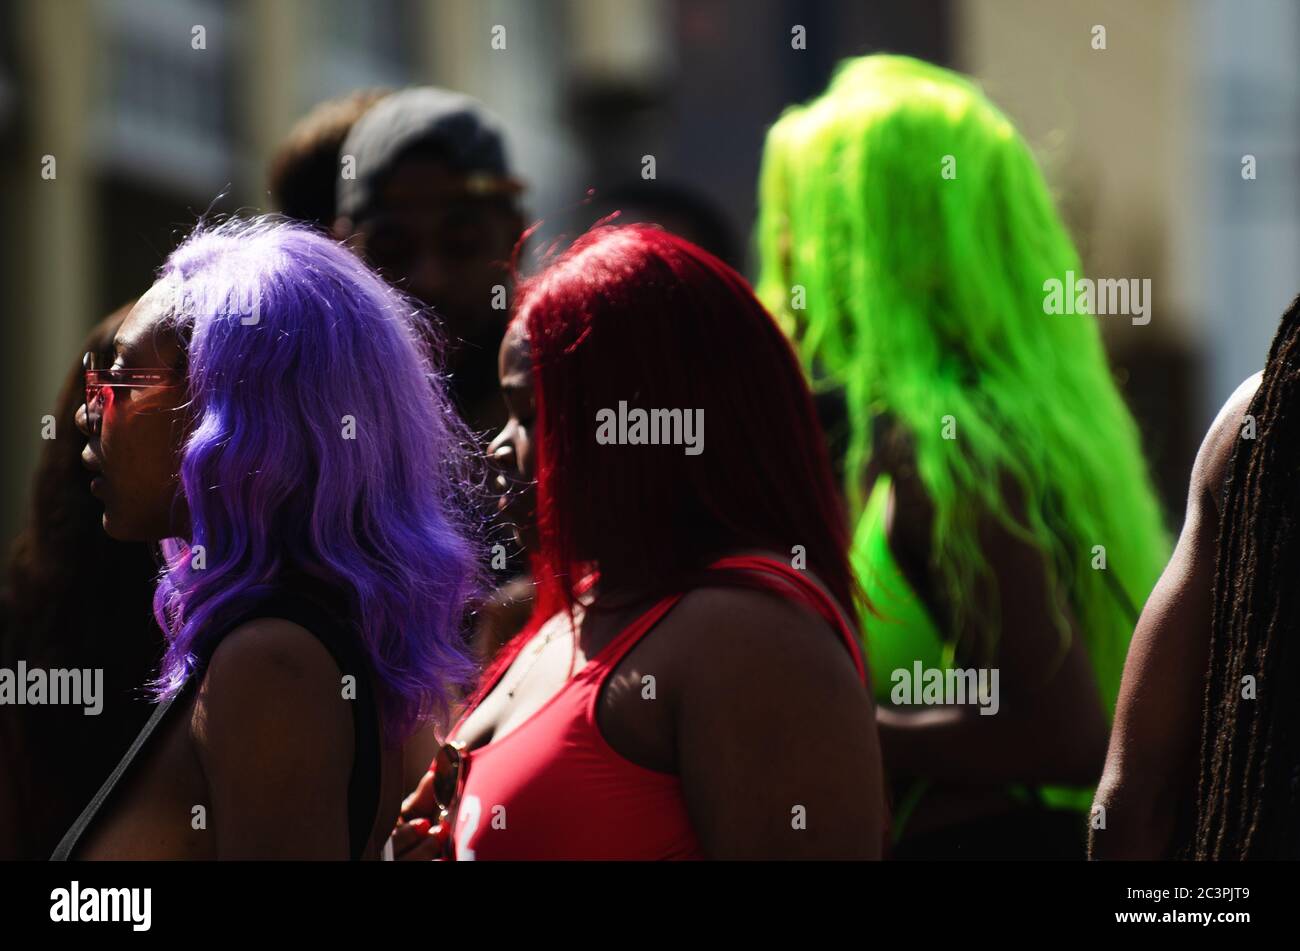 MIAMI - 17 MARS 2019 : de jeunes femmes aux cheveux colorés se promo dans un rassemblement d'étudiants célébrant les vacances de printemps sur Ocean Drive. Banque D'Images